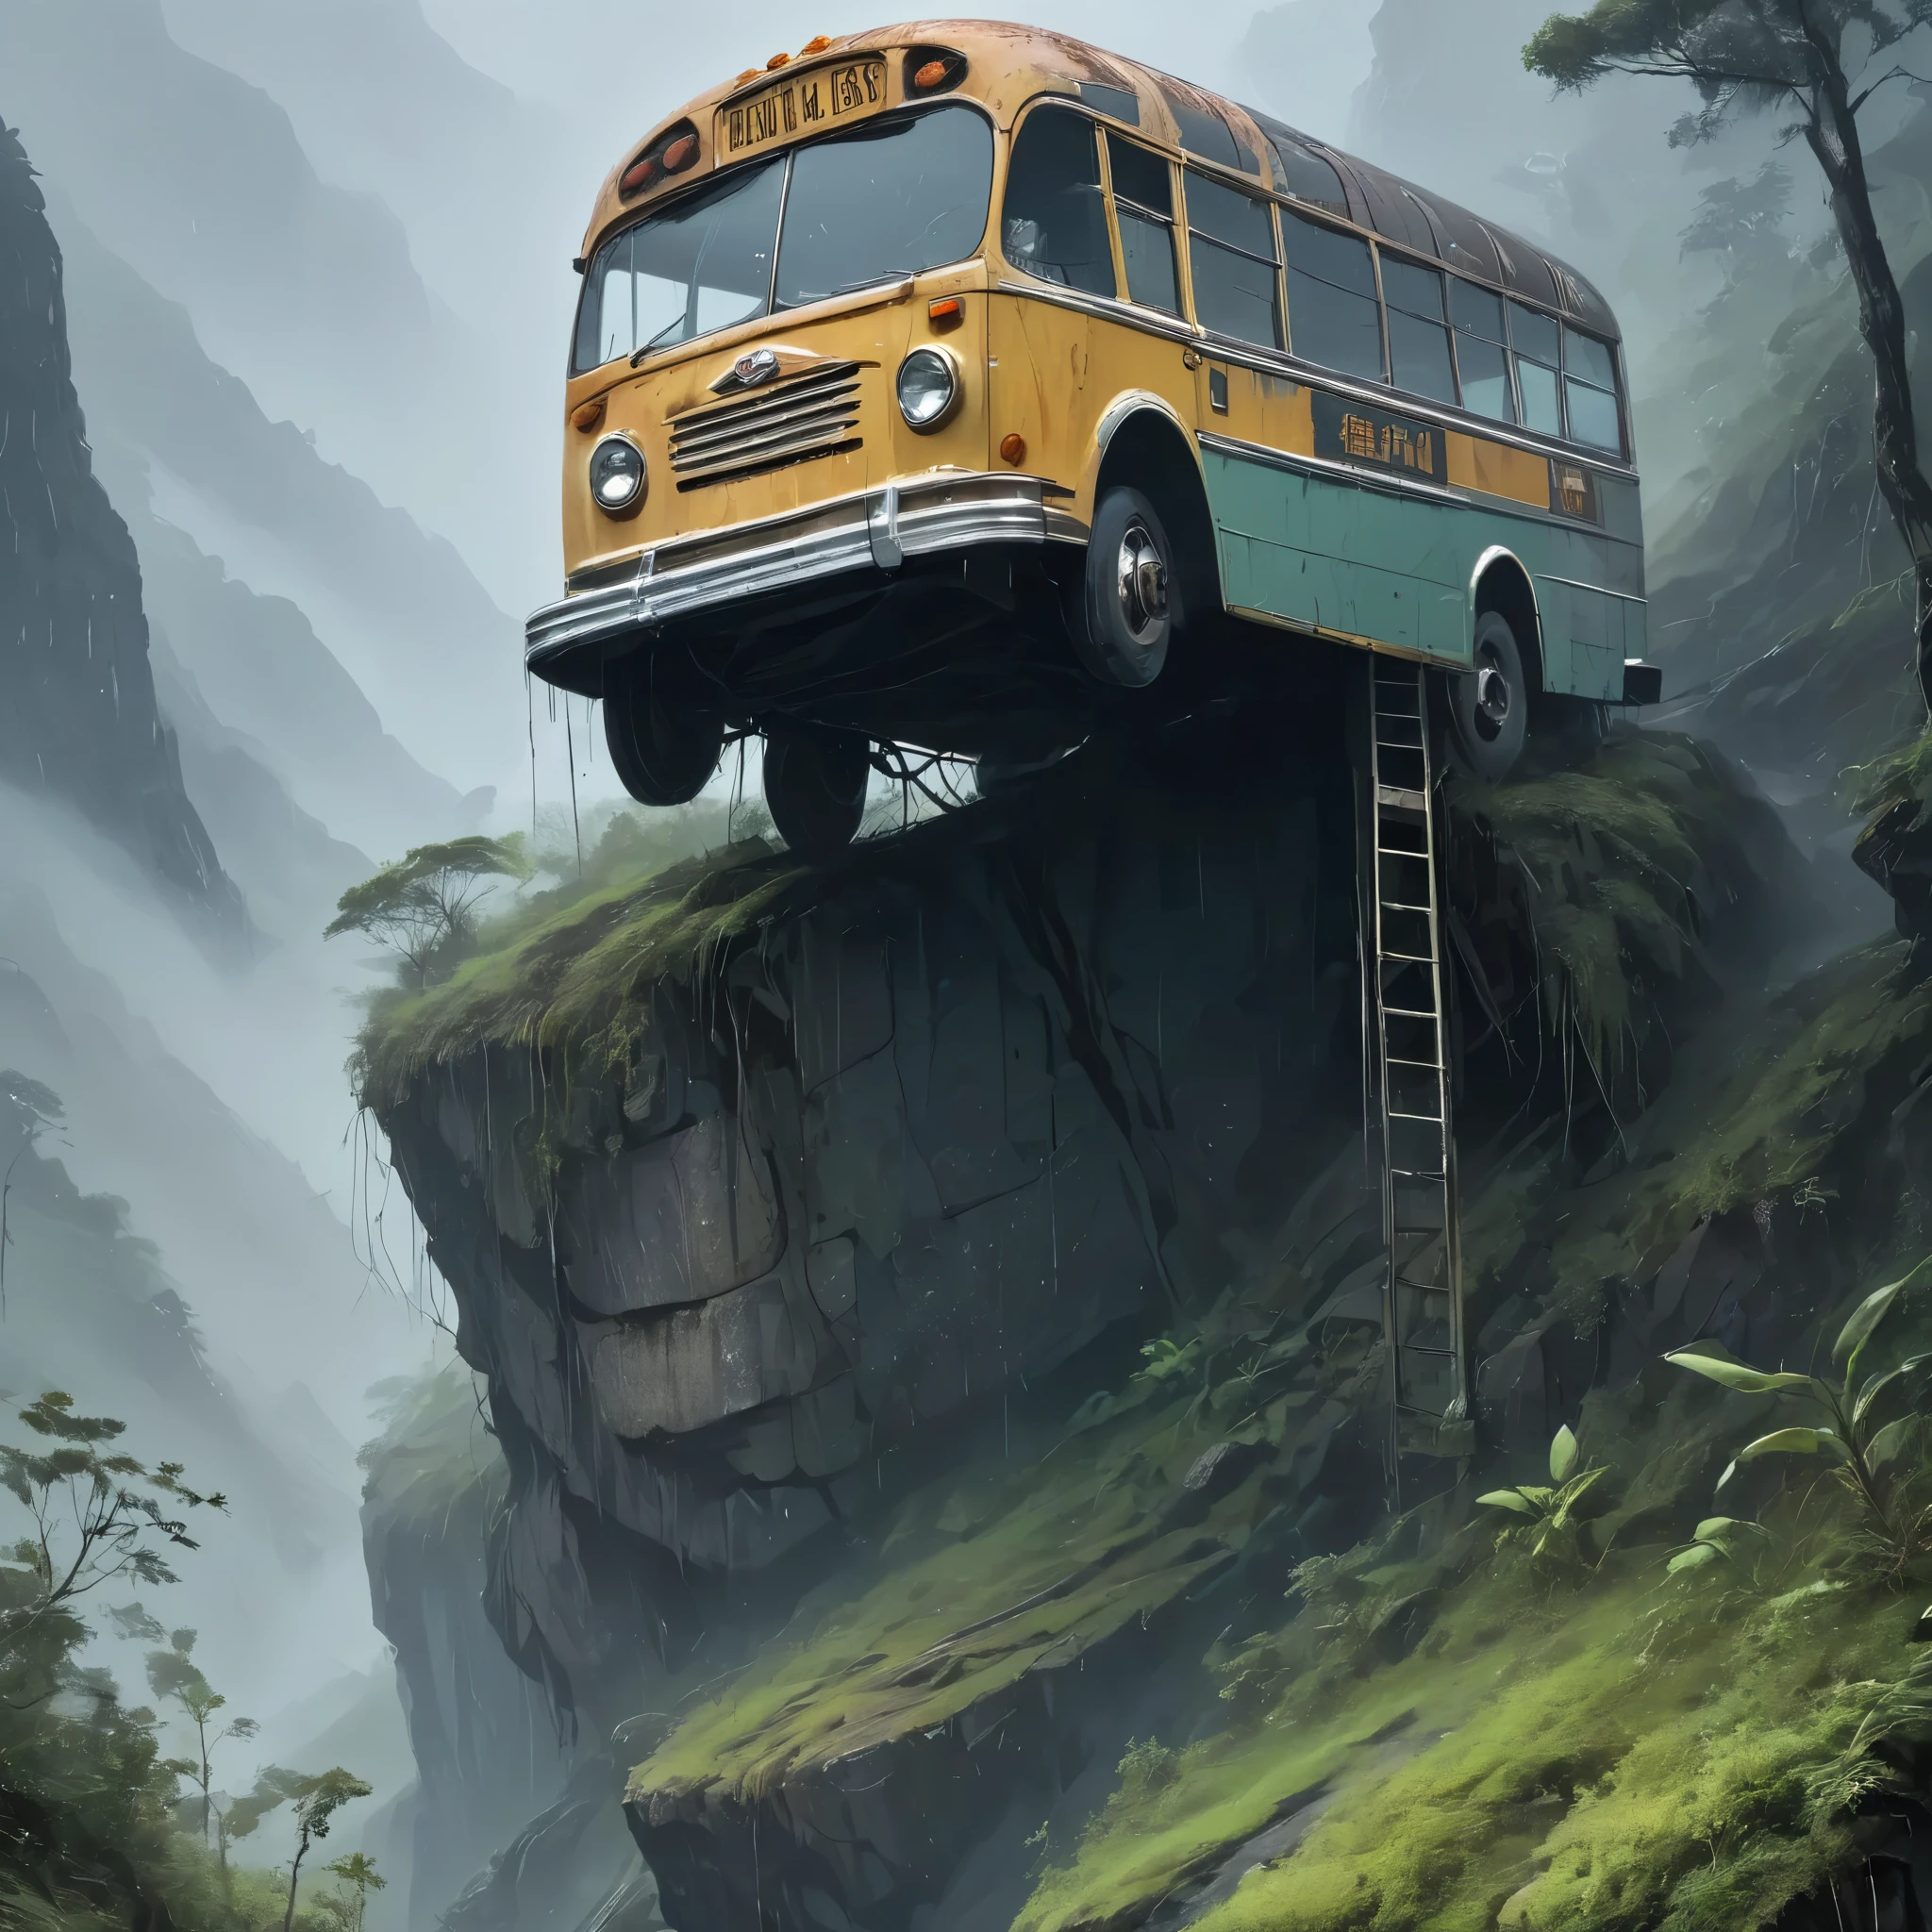 En medio de un aguacero torrencial y envuelto en una espesa niebla, la imagen captura un autobús desgastado y decrépito precariamente encaramado en la cima de una montaña escarpada que sirve como un improbable puente que conecta dos mundos separados.